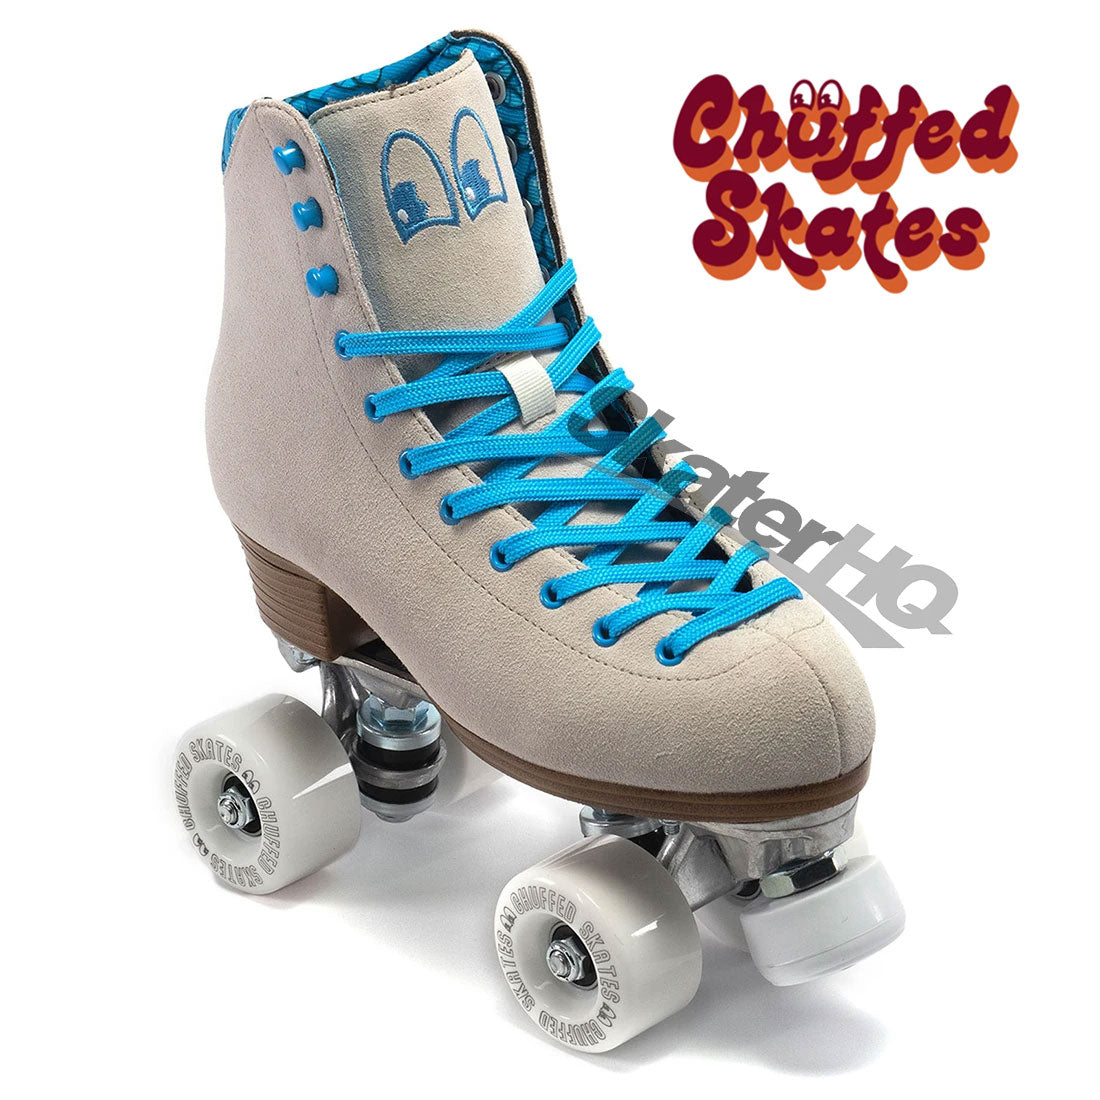 Chuffed Crew Bowzer Grey 5US Roller Skates